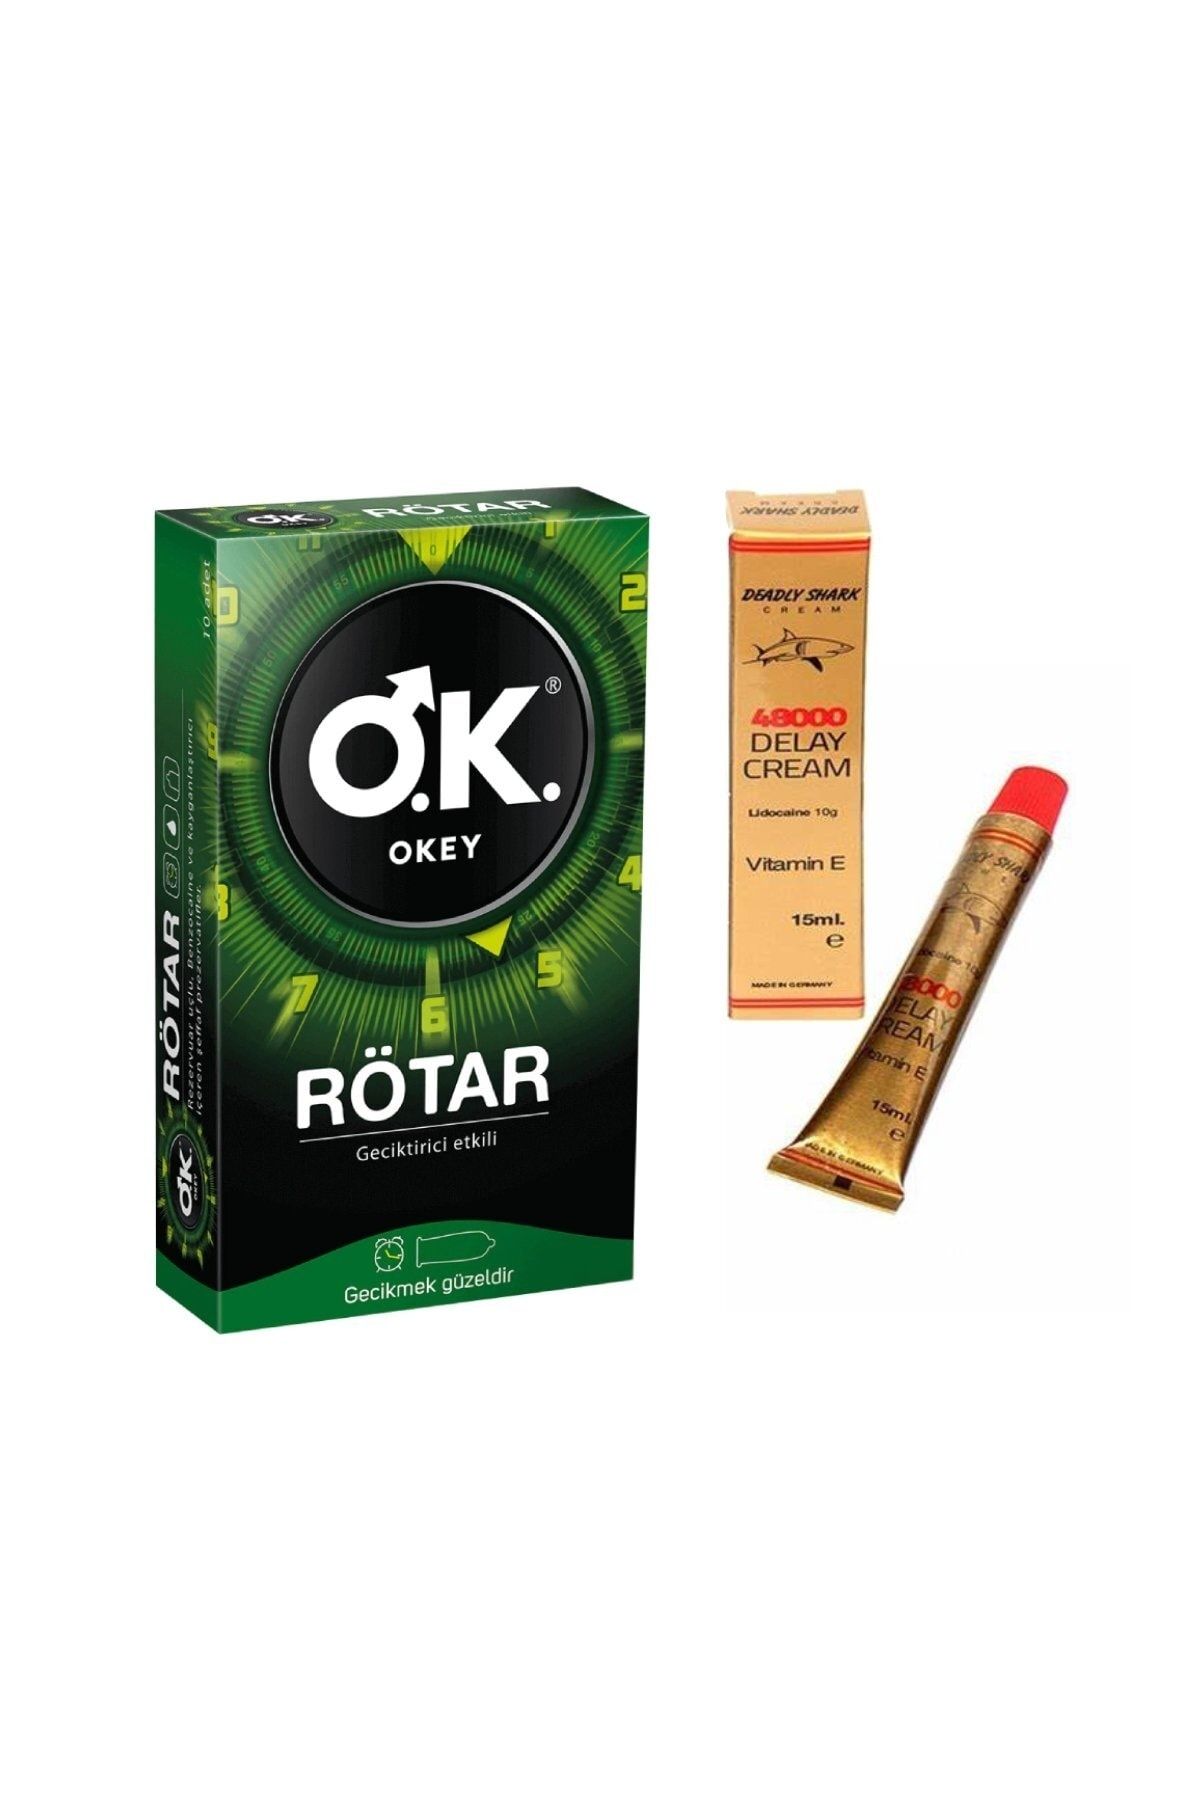 Okey Rötar Prezervatif 10 Li  Etkili  Krem